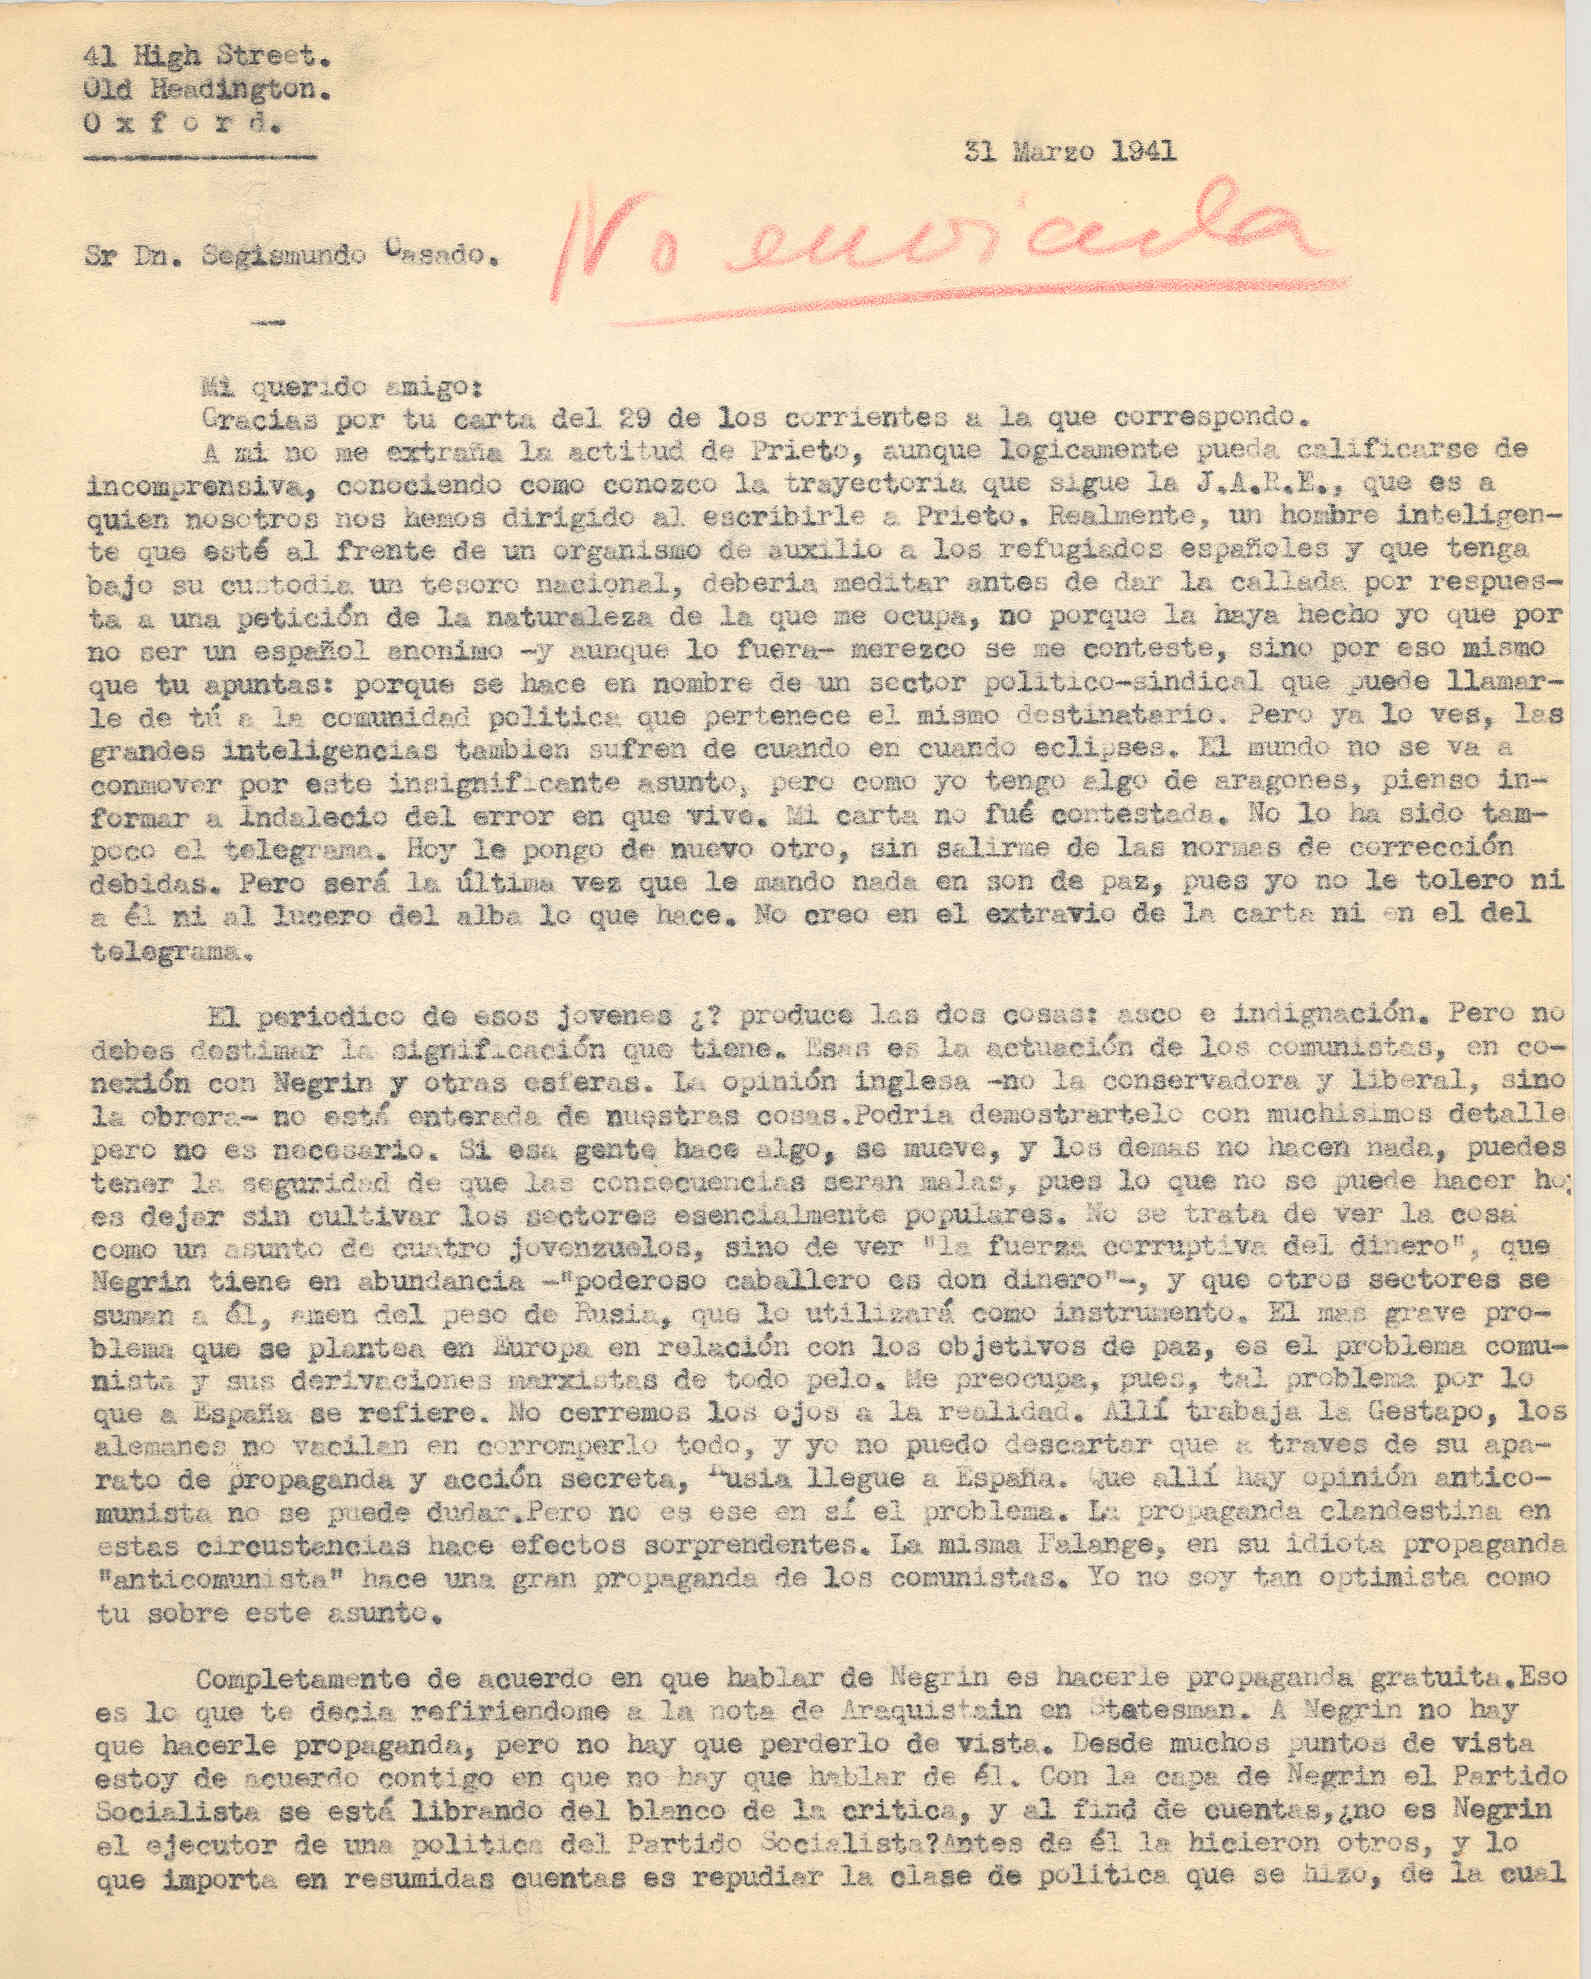 Carta a Segismundo Casado criticando a Prieto por callar y a la actuación de los comunistas en conexión con Negrín.